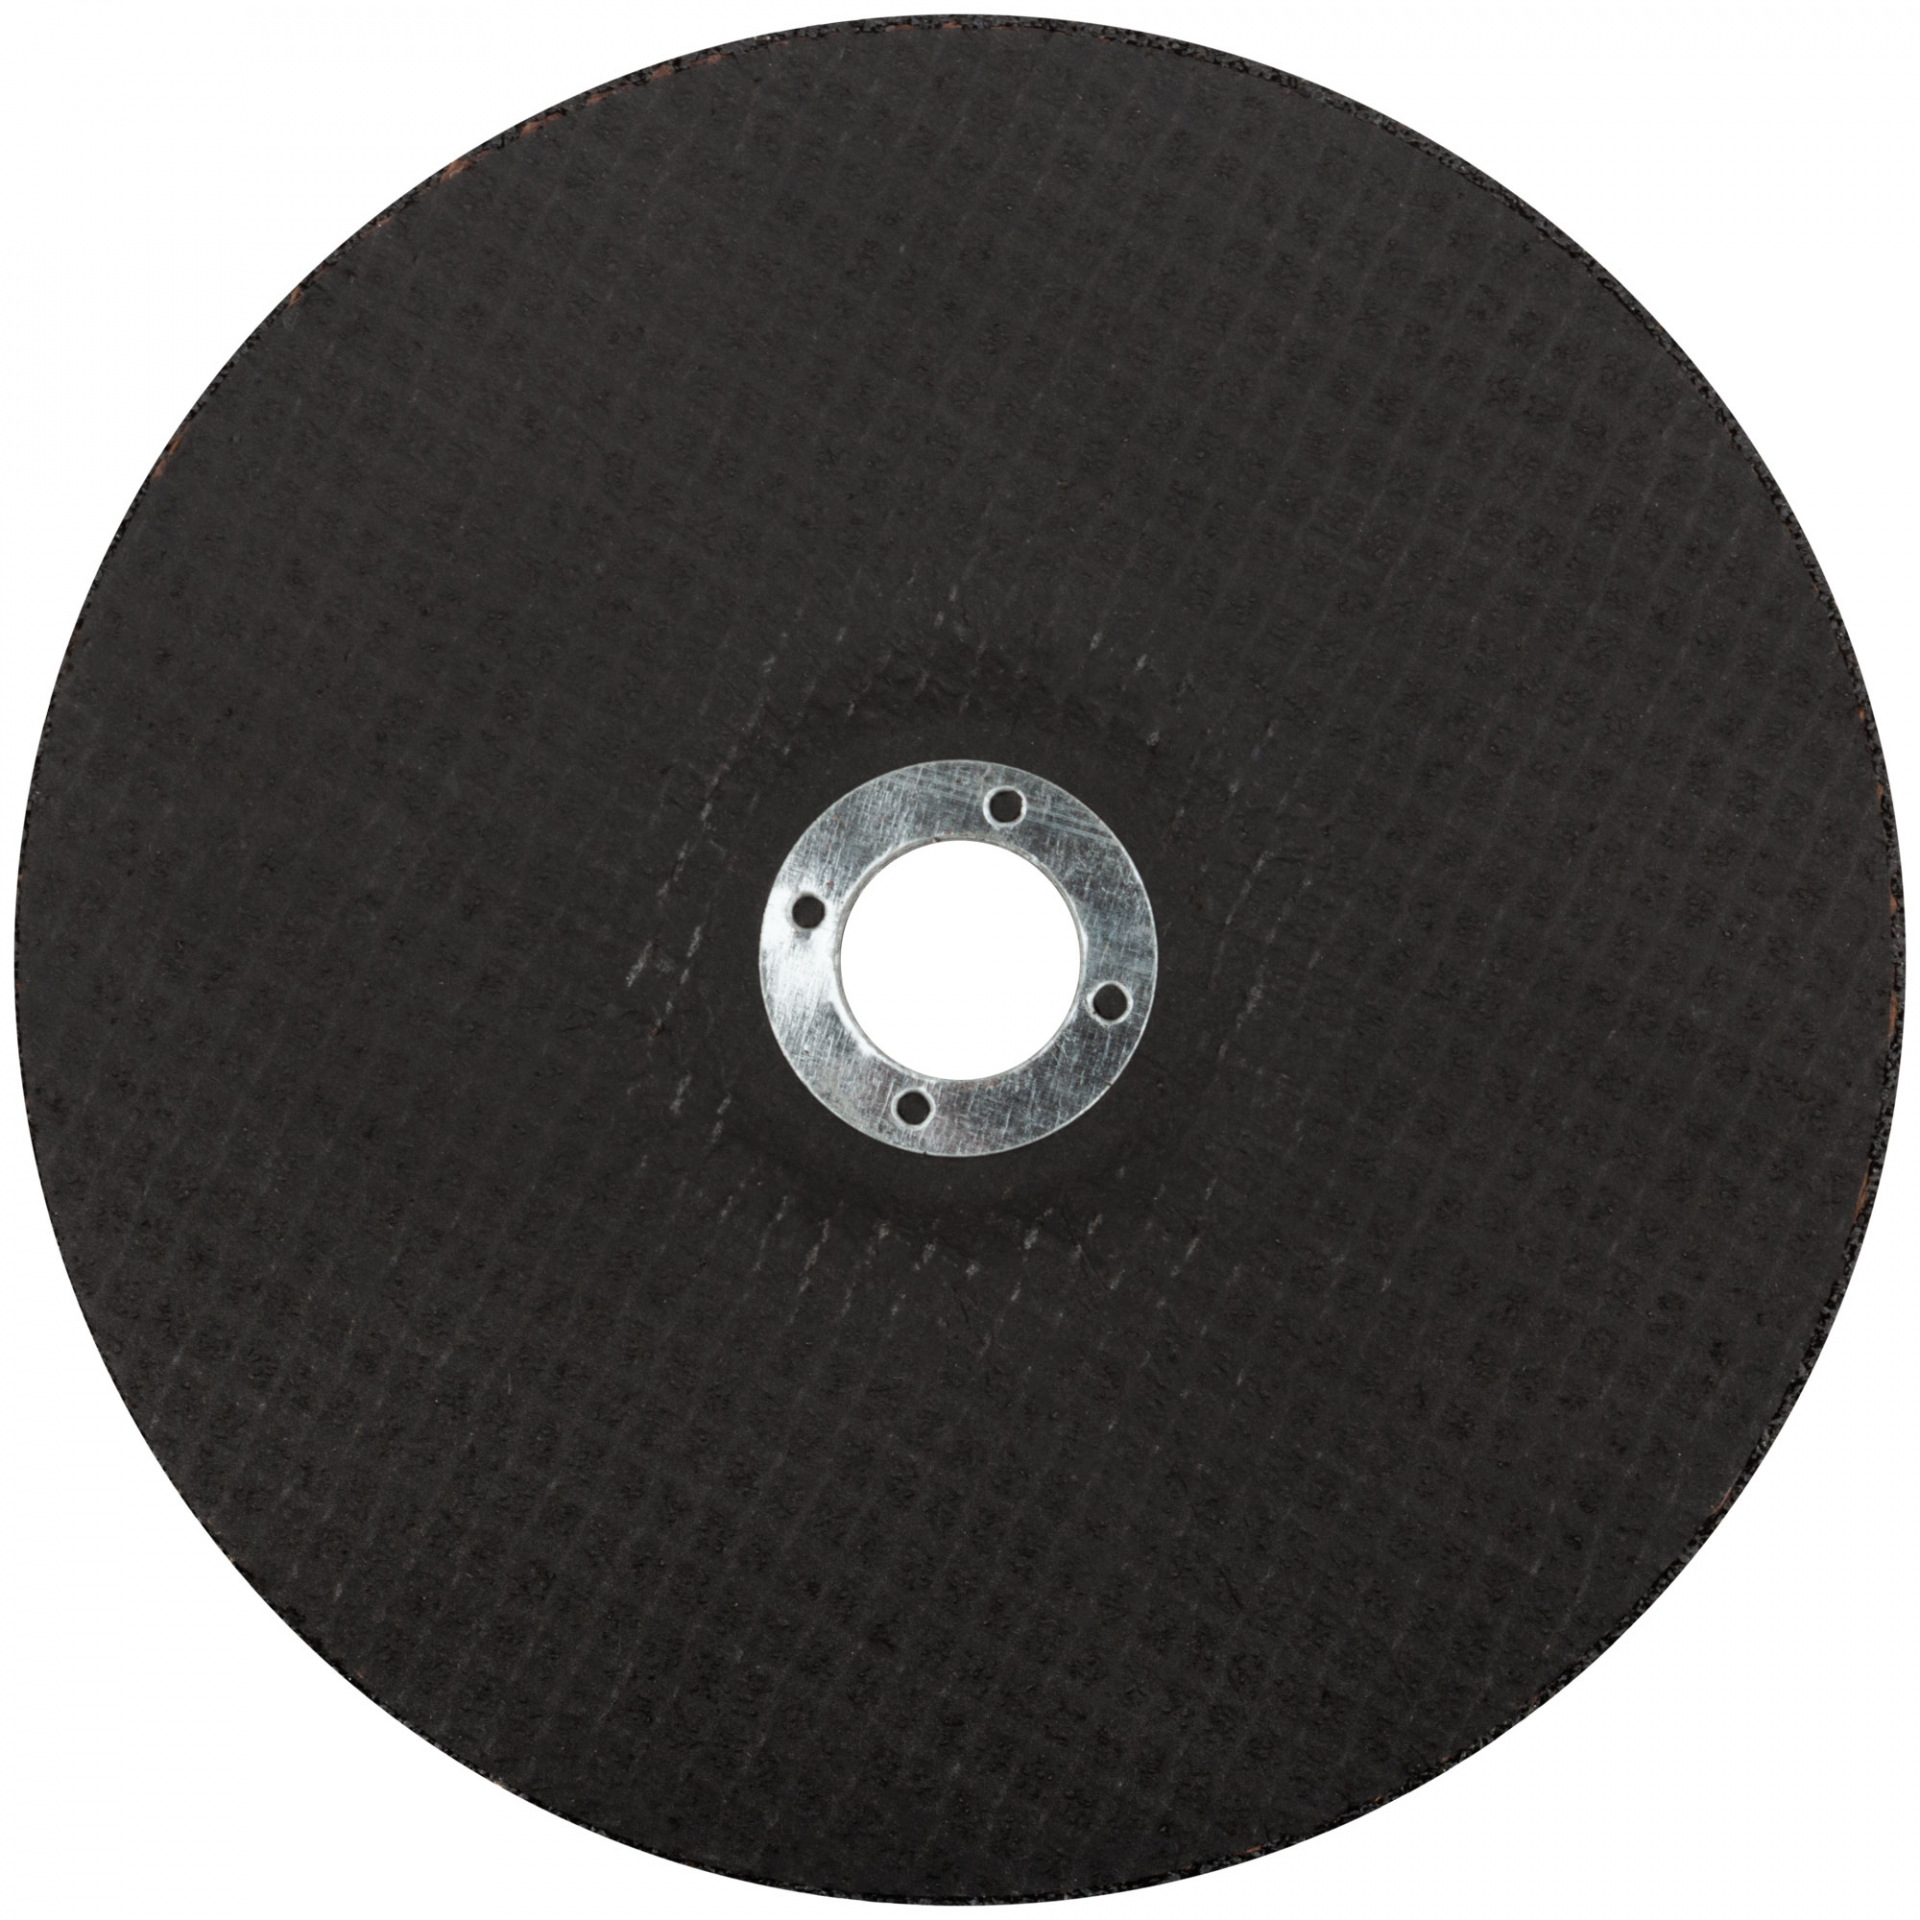 Профессиональный диск шлифовальный по металлу и нержавеющей стали Cutop Profi T27-180 x 6,0 x 22,2 мм